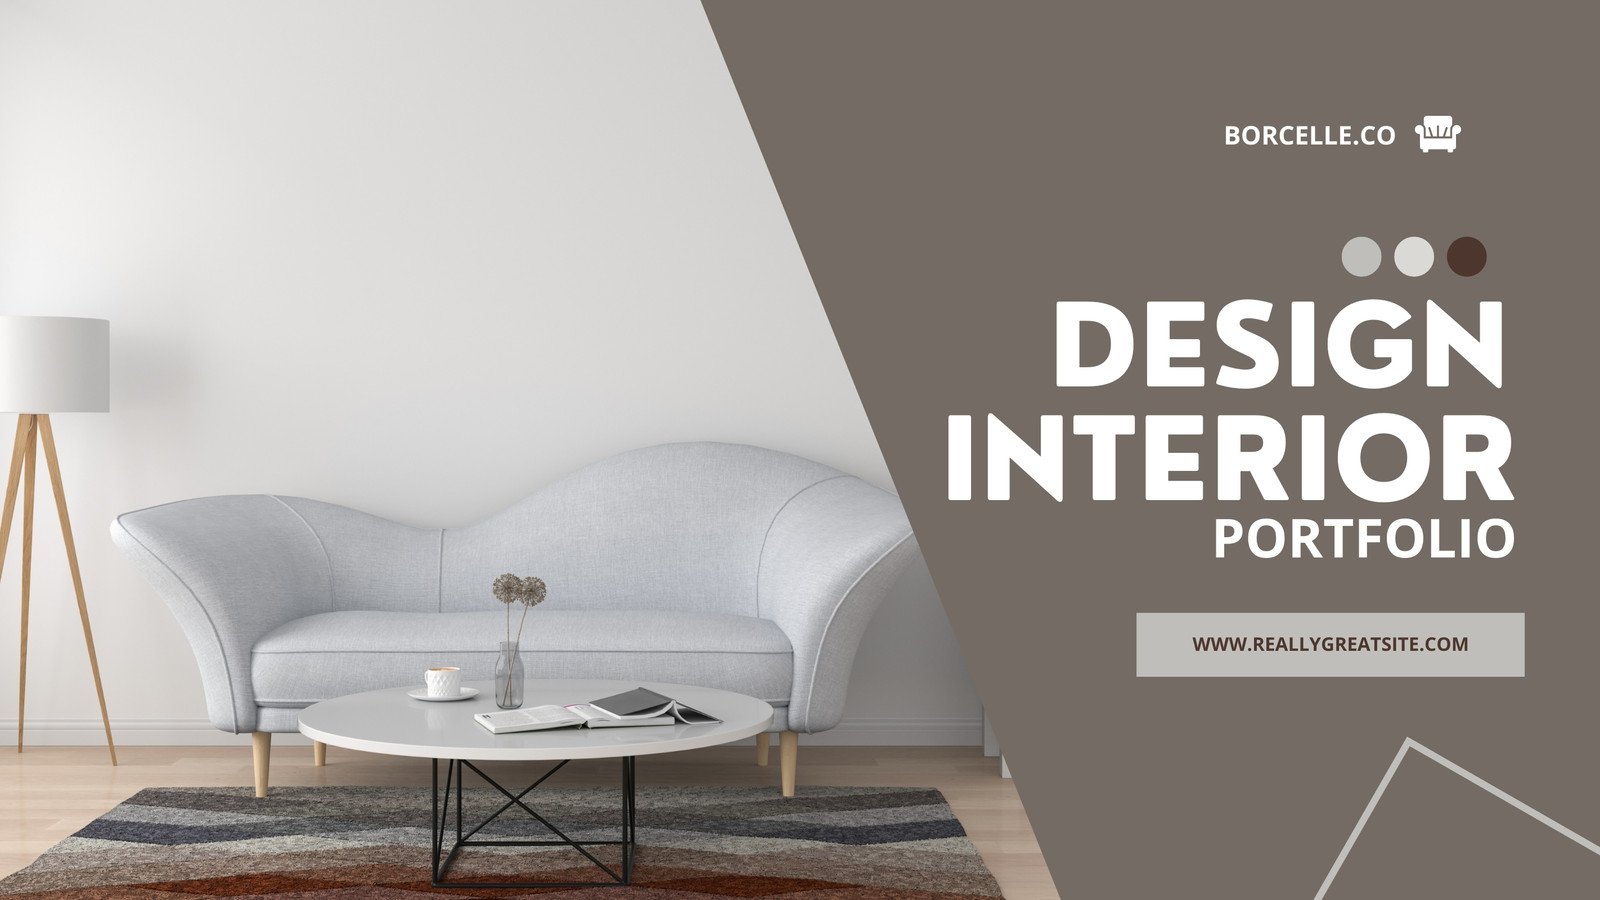 interior design portfolio